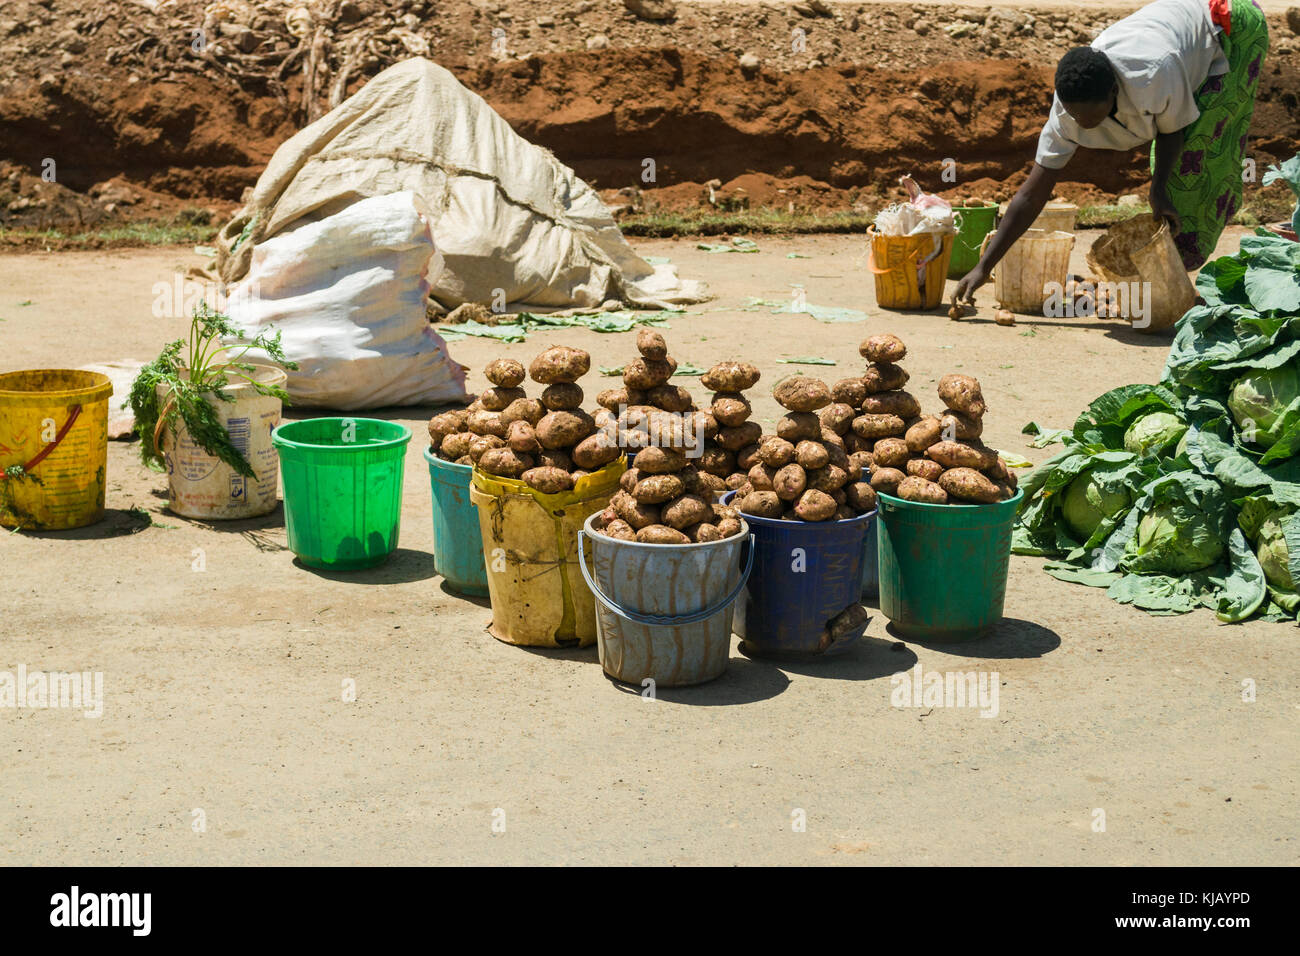 Benne di patate sul display per la vendita presso la banchina con donna africana nel lavoro di sfondo, Kenya, Africa orientale Foto Stock